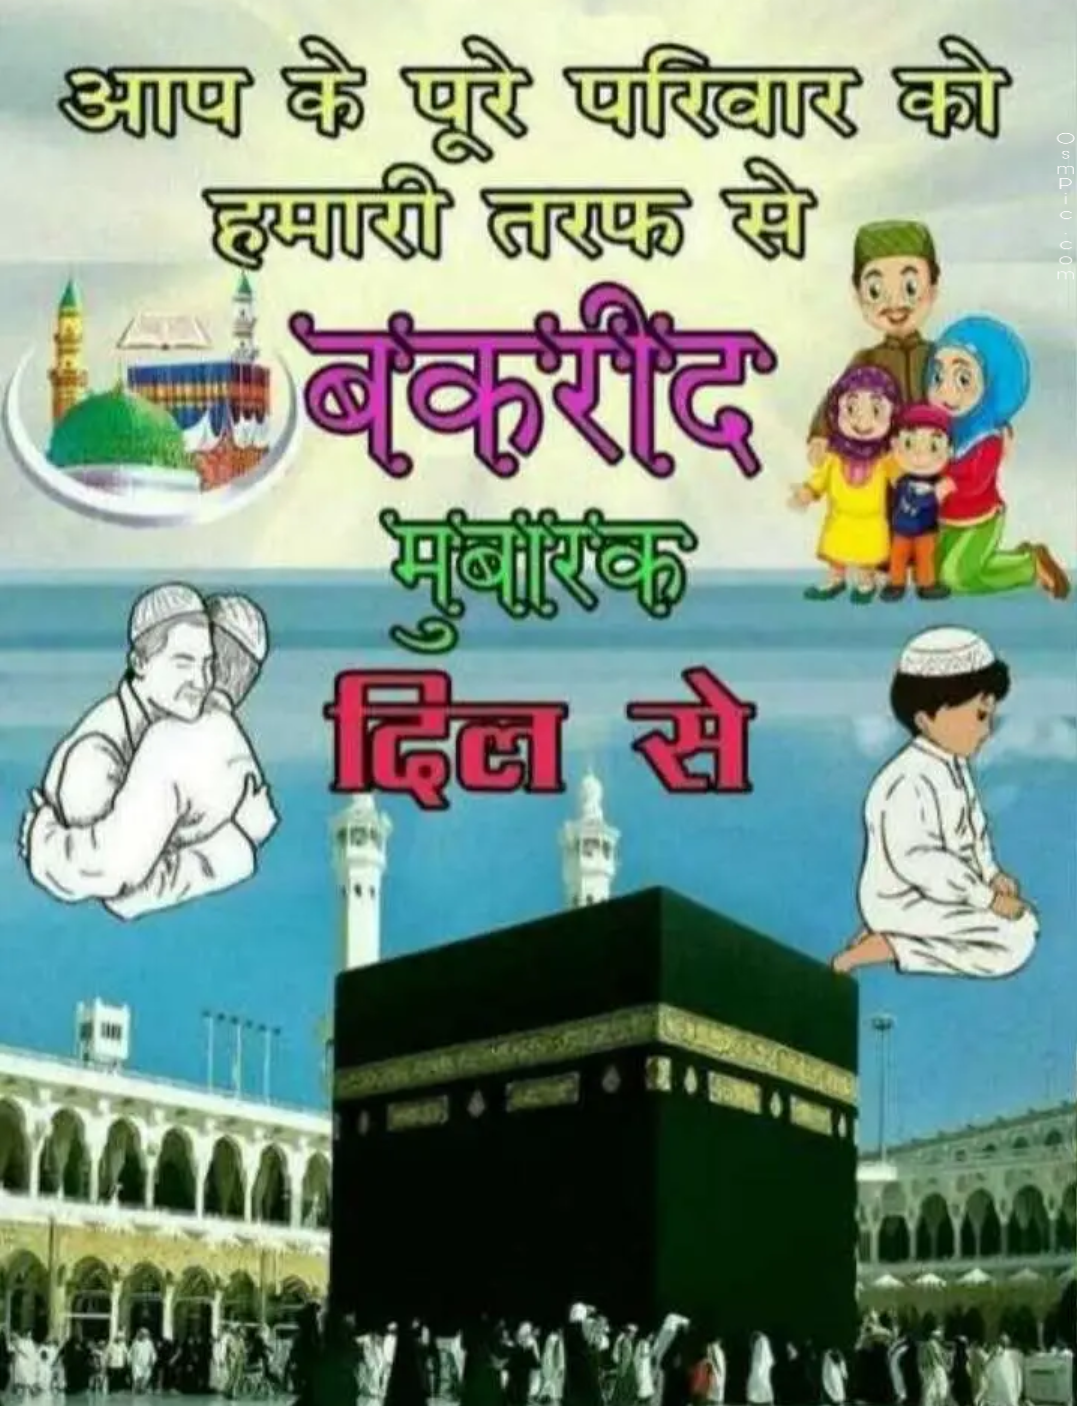 2019 Bakrid Wishes Images Bakra Eid Mubarak Images Eid Ul Adha